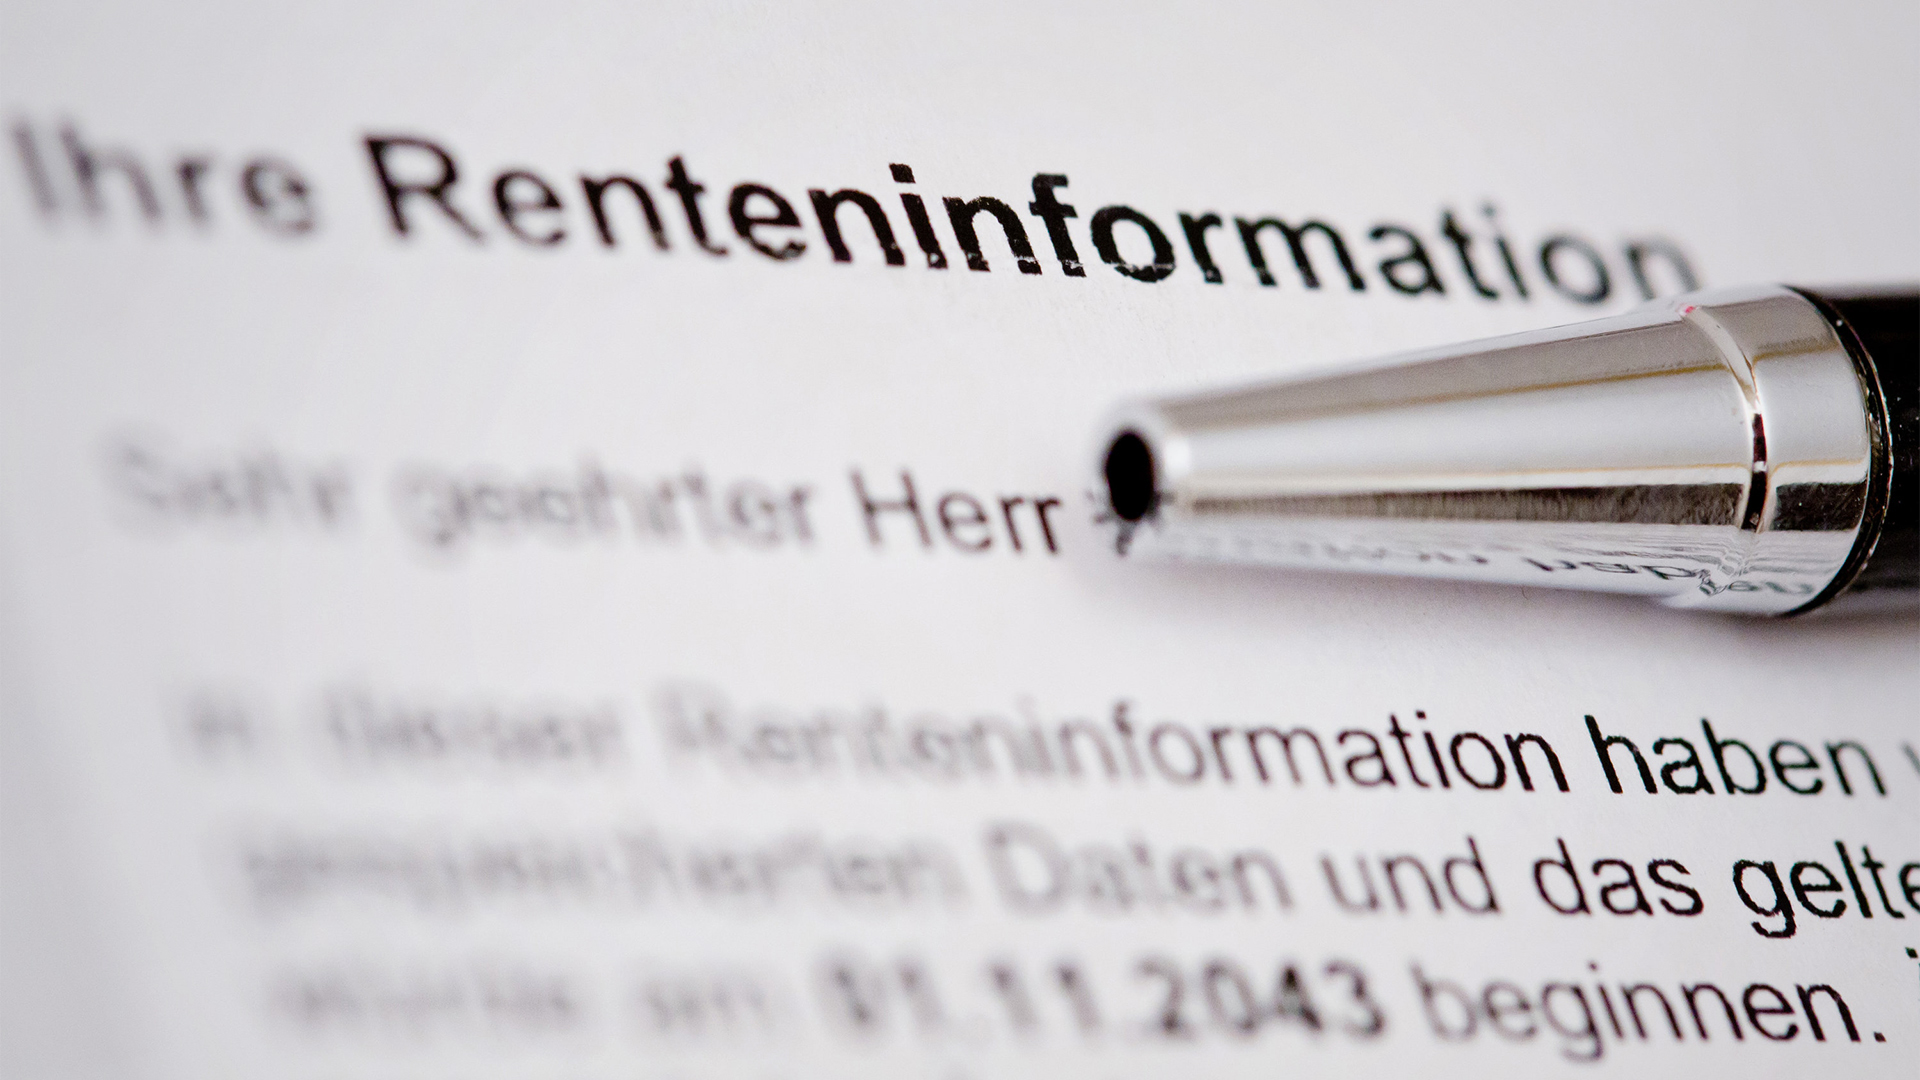 Ihre Renteninformation ist auf einer Renteninformation der Deutschen Rentenversicherung zu lesen | dpa